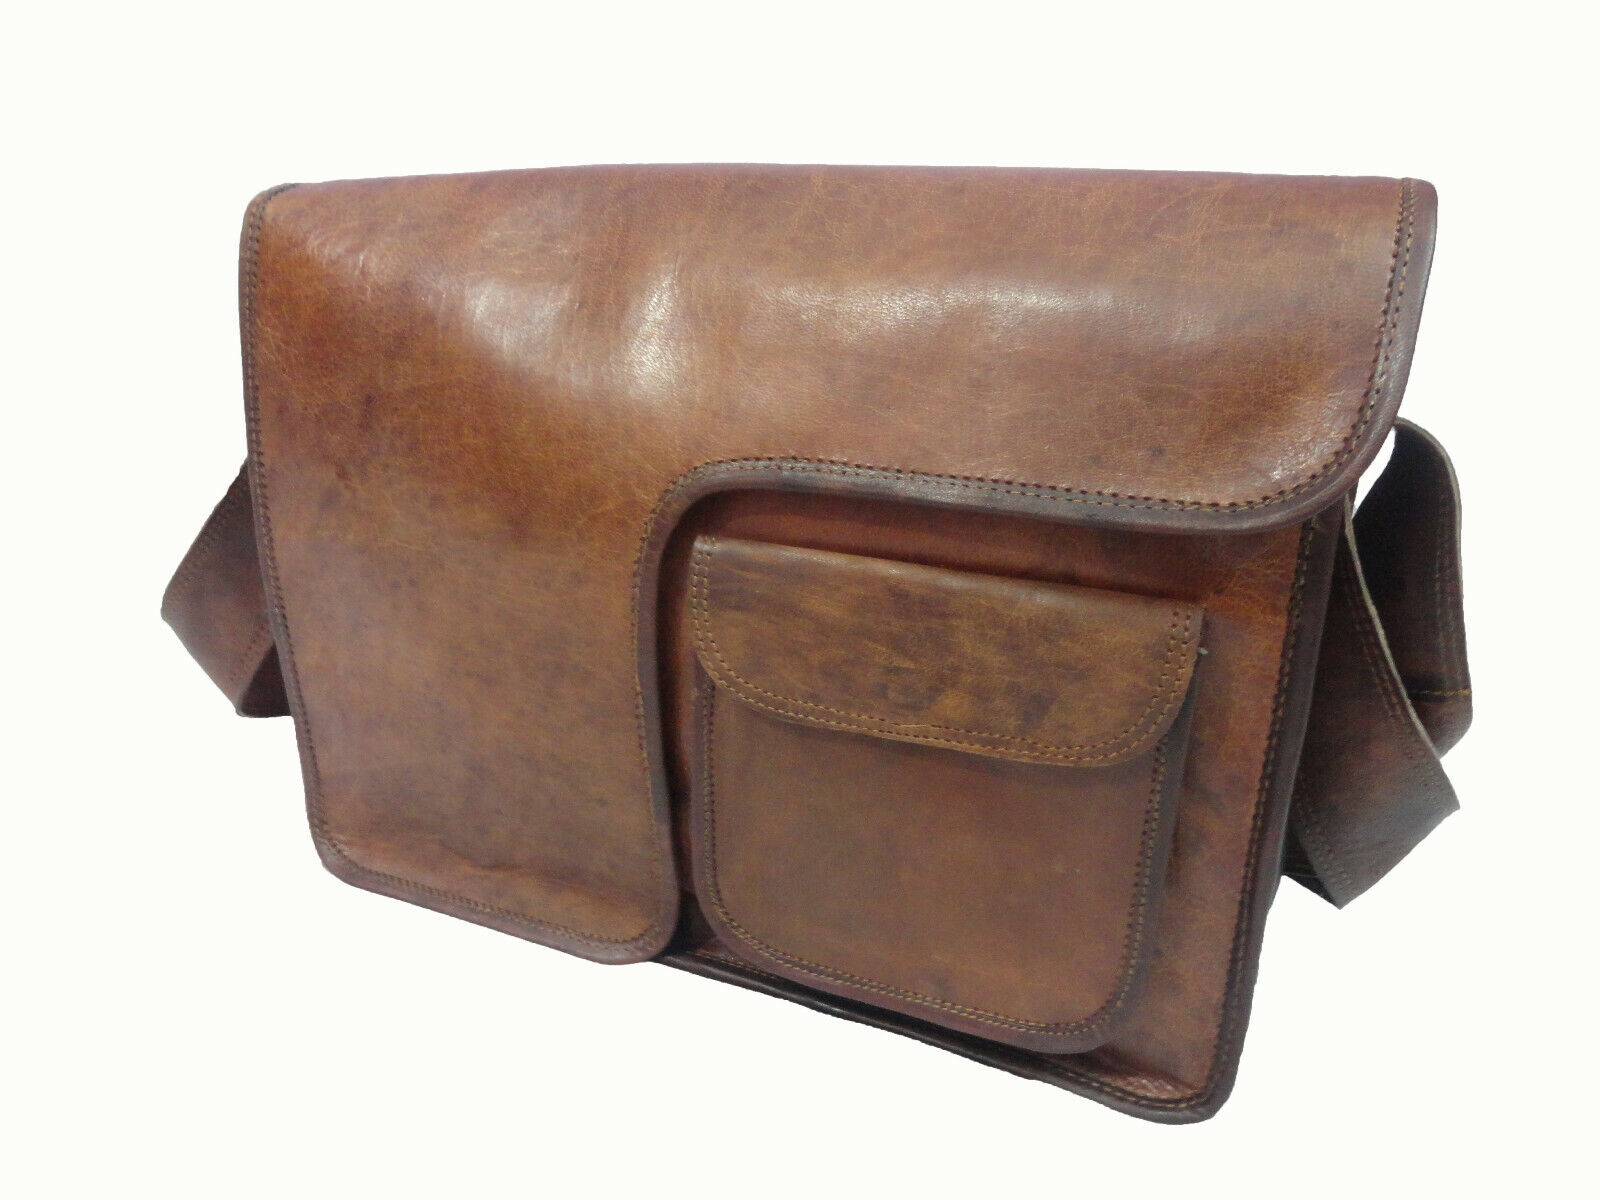 18 in Genuine Leather Messenger Bag Office College Laptop Satchel Shoulder Bags